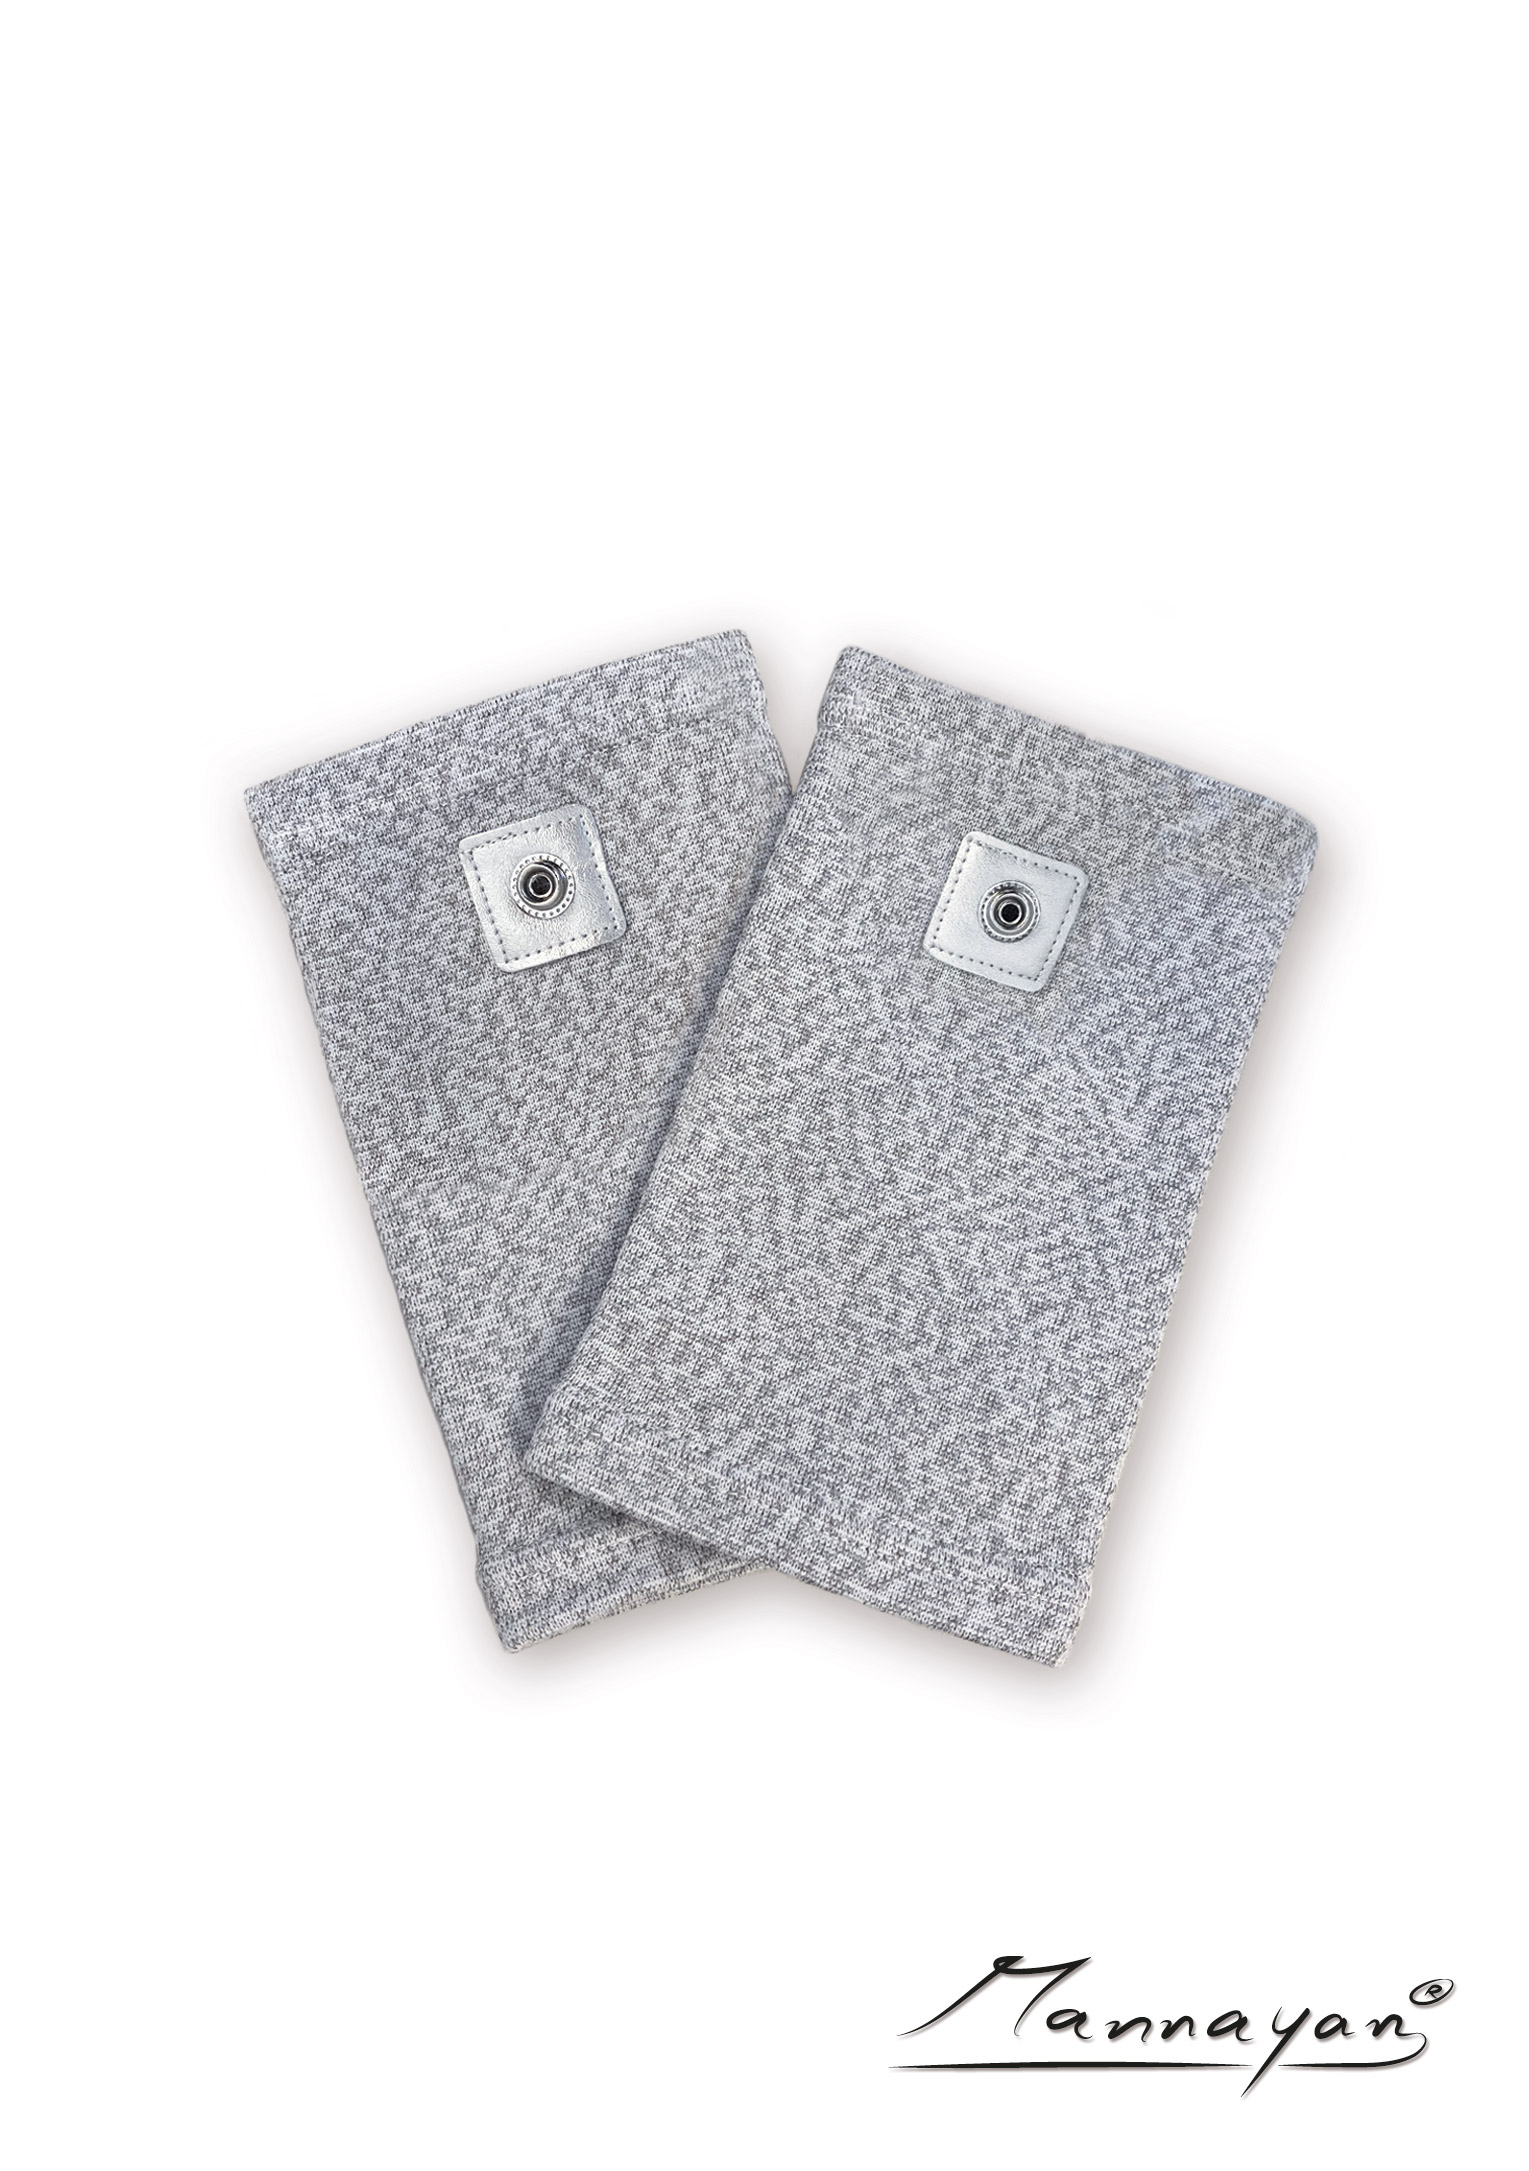 Silberfaser-Knie-Manschetten für Diamond Shield Zapper (1 Paar)